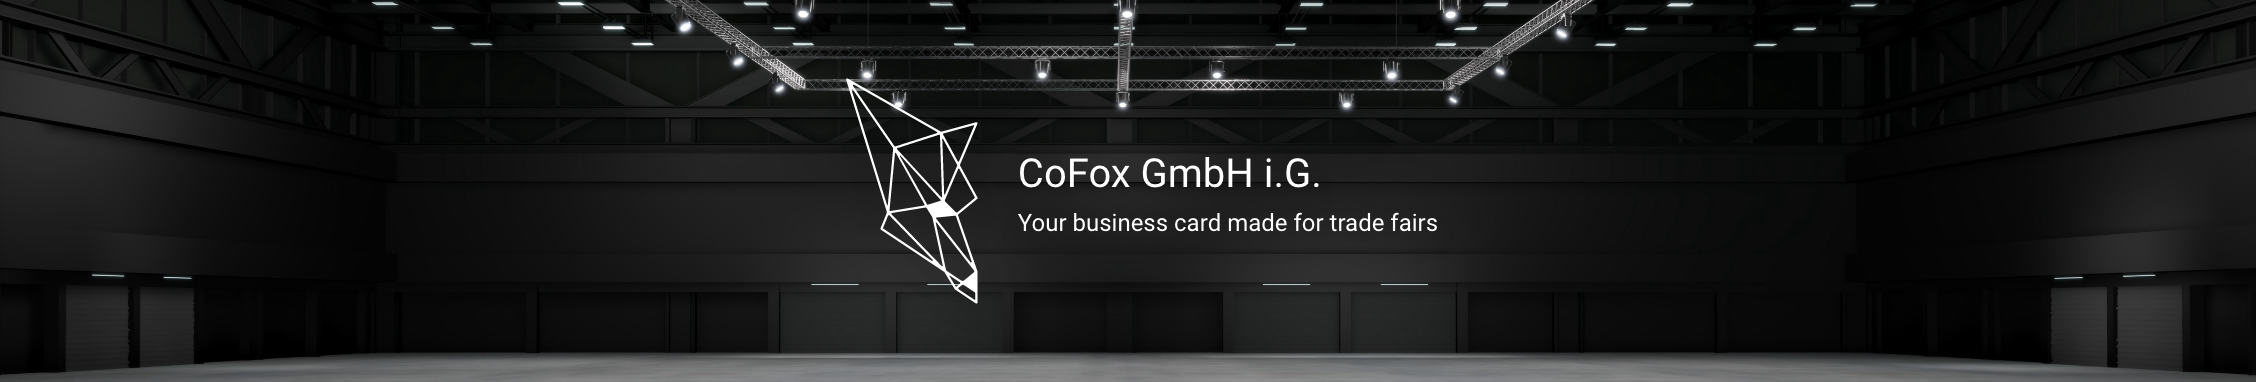 CoFox / startup von München / Background